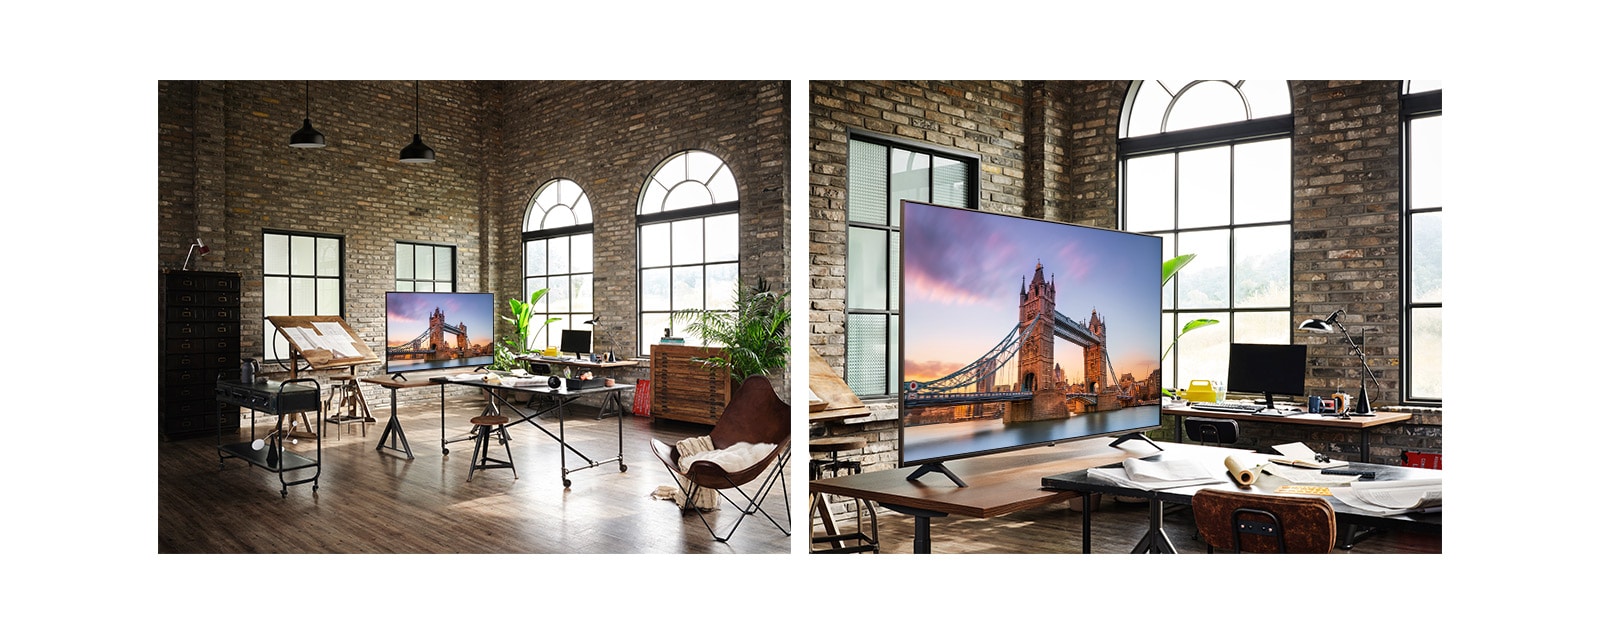 Televizors ar Londonas tilta attēlu novietots antīkā darbistabā. Pietuvinājumā televizors, kurā redzams Londonas tilta attēls, uz galda antīkā darbistabā.